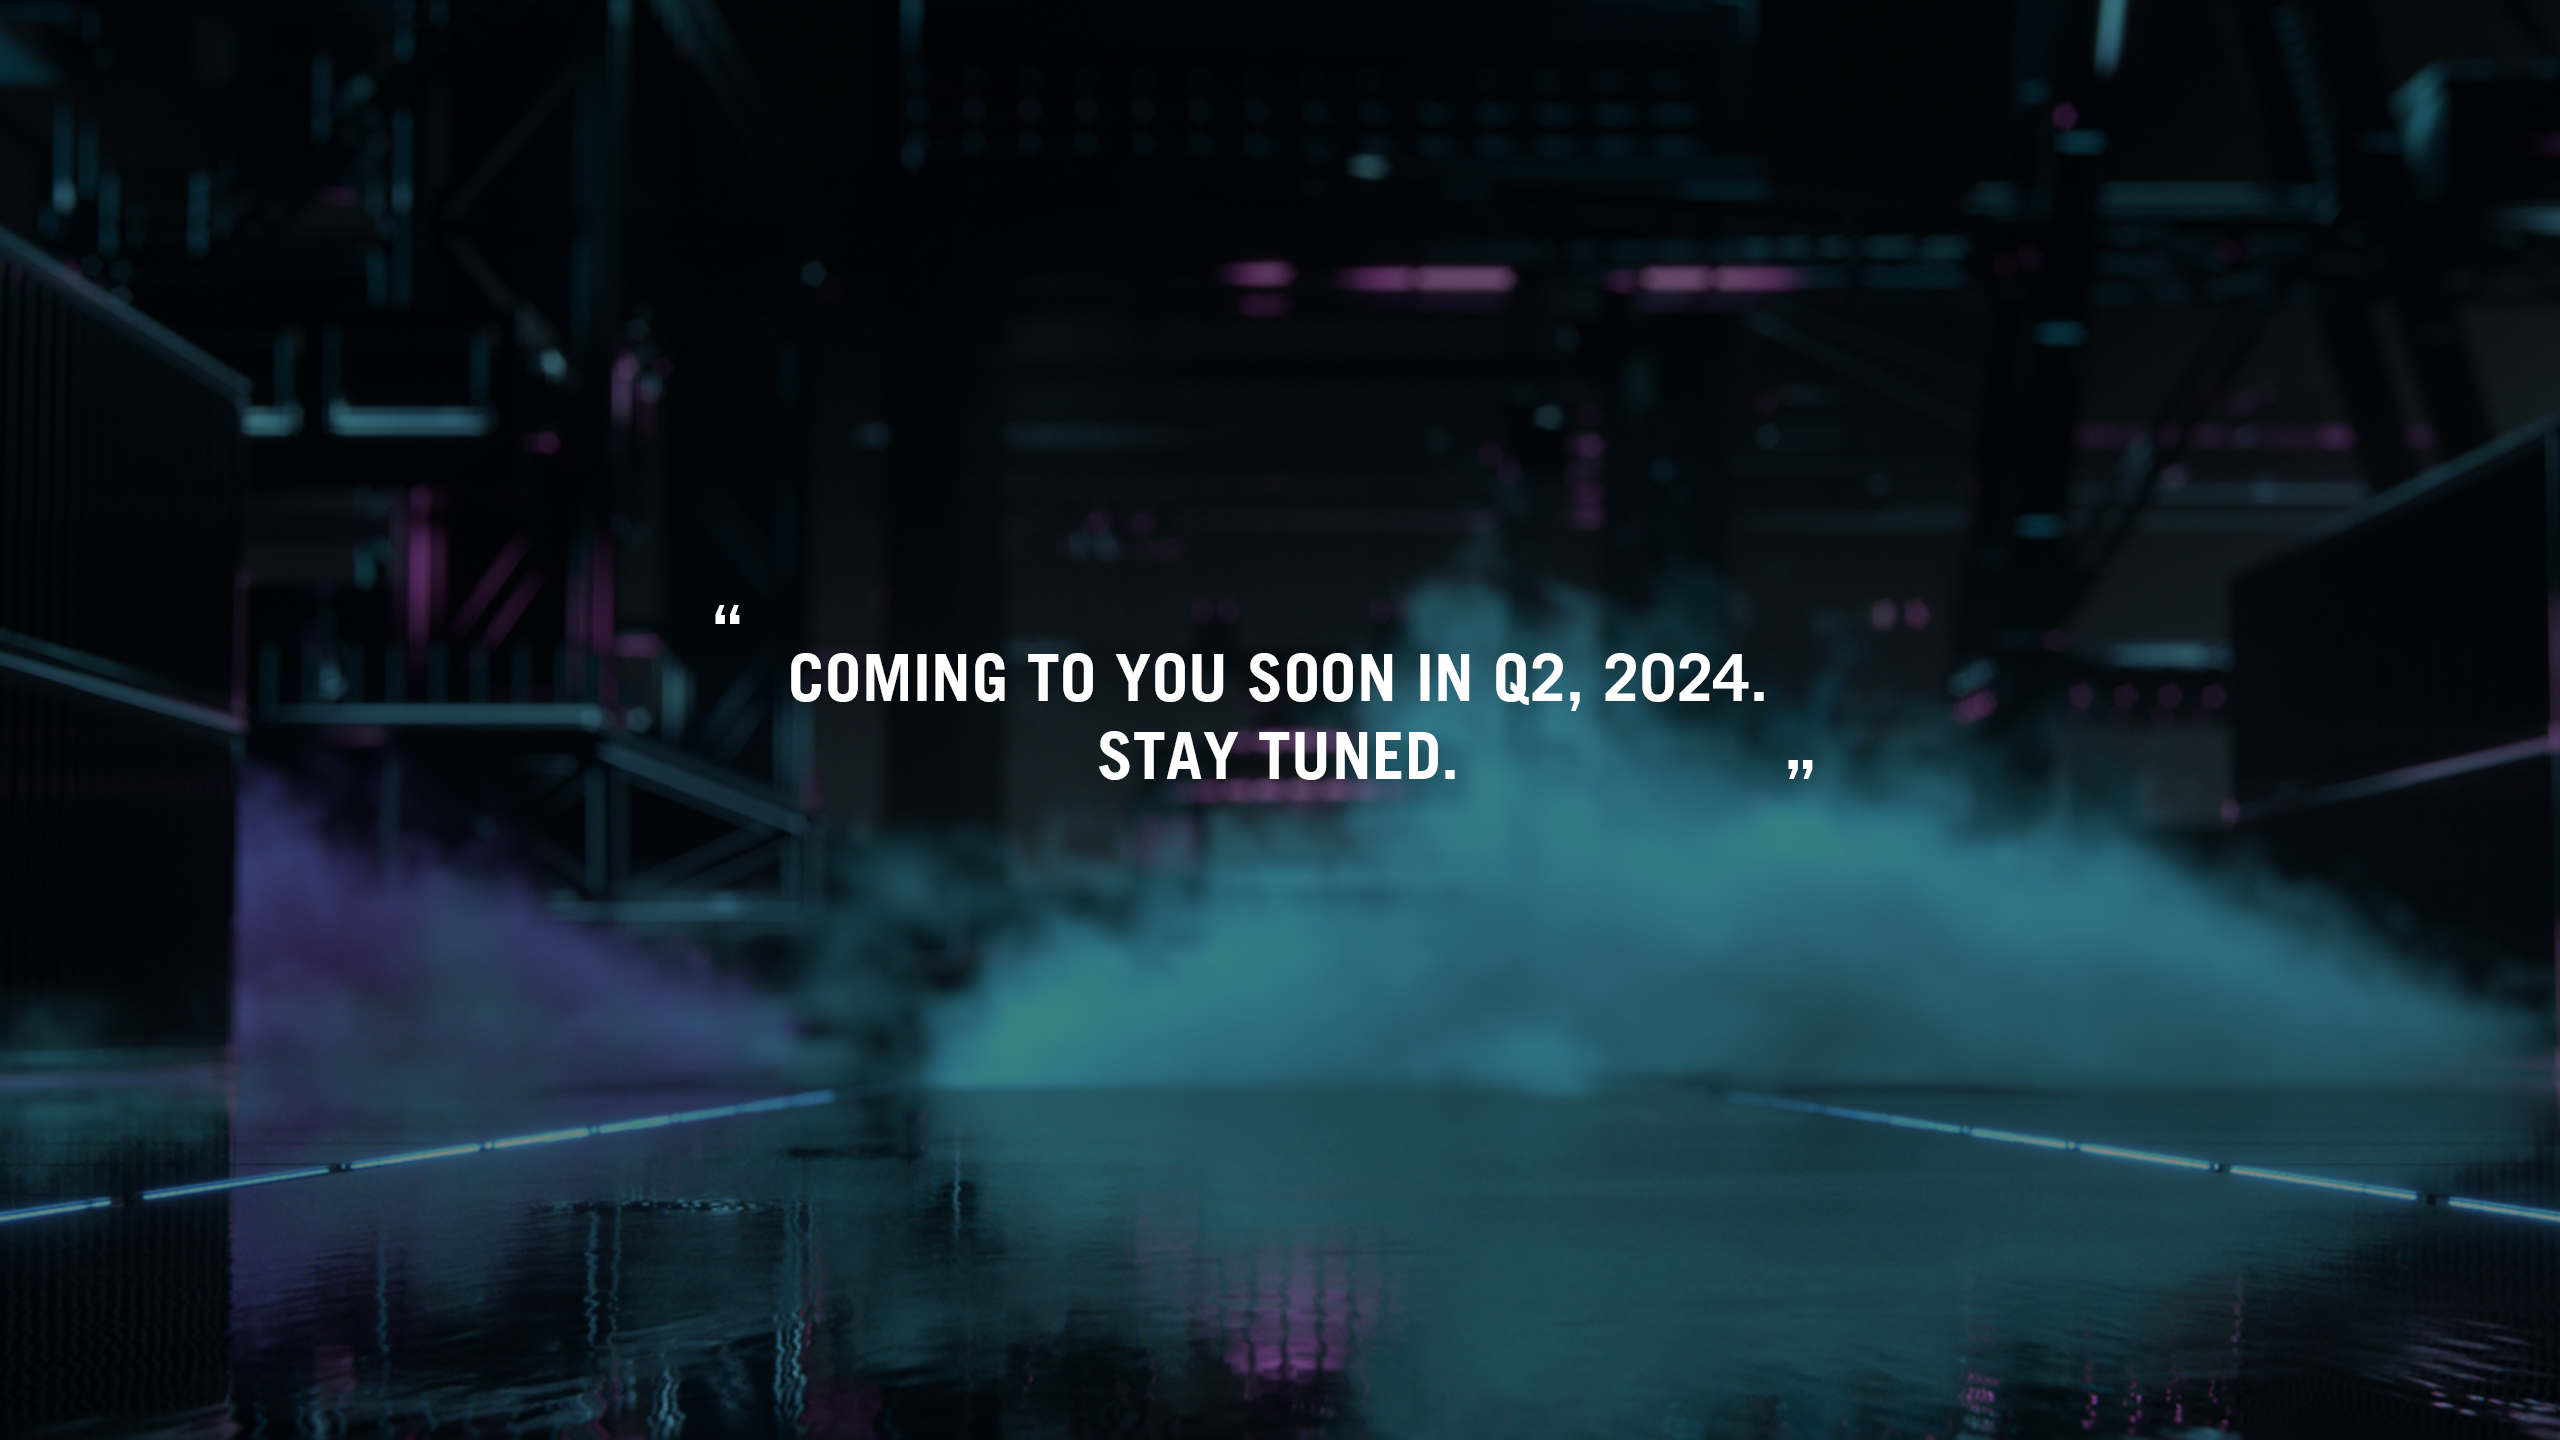 un fond noir avec de la fumée bleue et violette, et des textes indiquant que la Keris II Ace sera bientôt disponible dans les magasins au cours du 2ème trimestre 2024